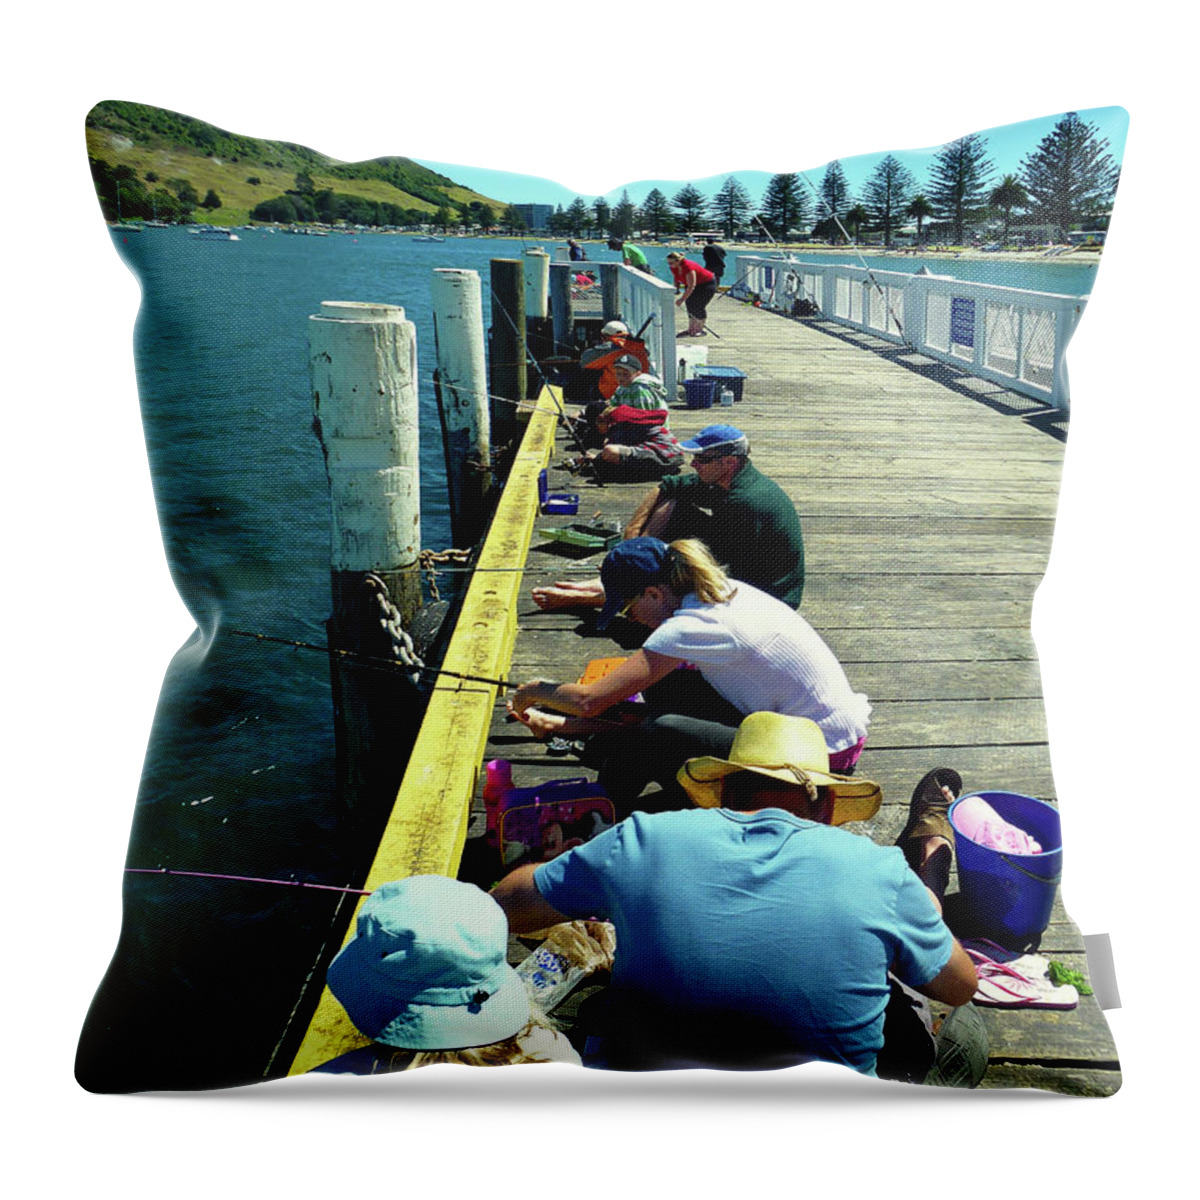 Pilot Bay Throw Pillow featuring the photograph Pilot Bay Beach 6 - Mount Maunganui Tauranga New Zealand by Selena Boron